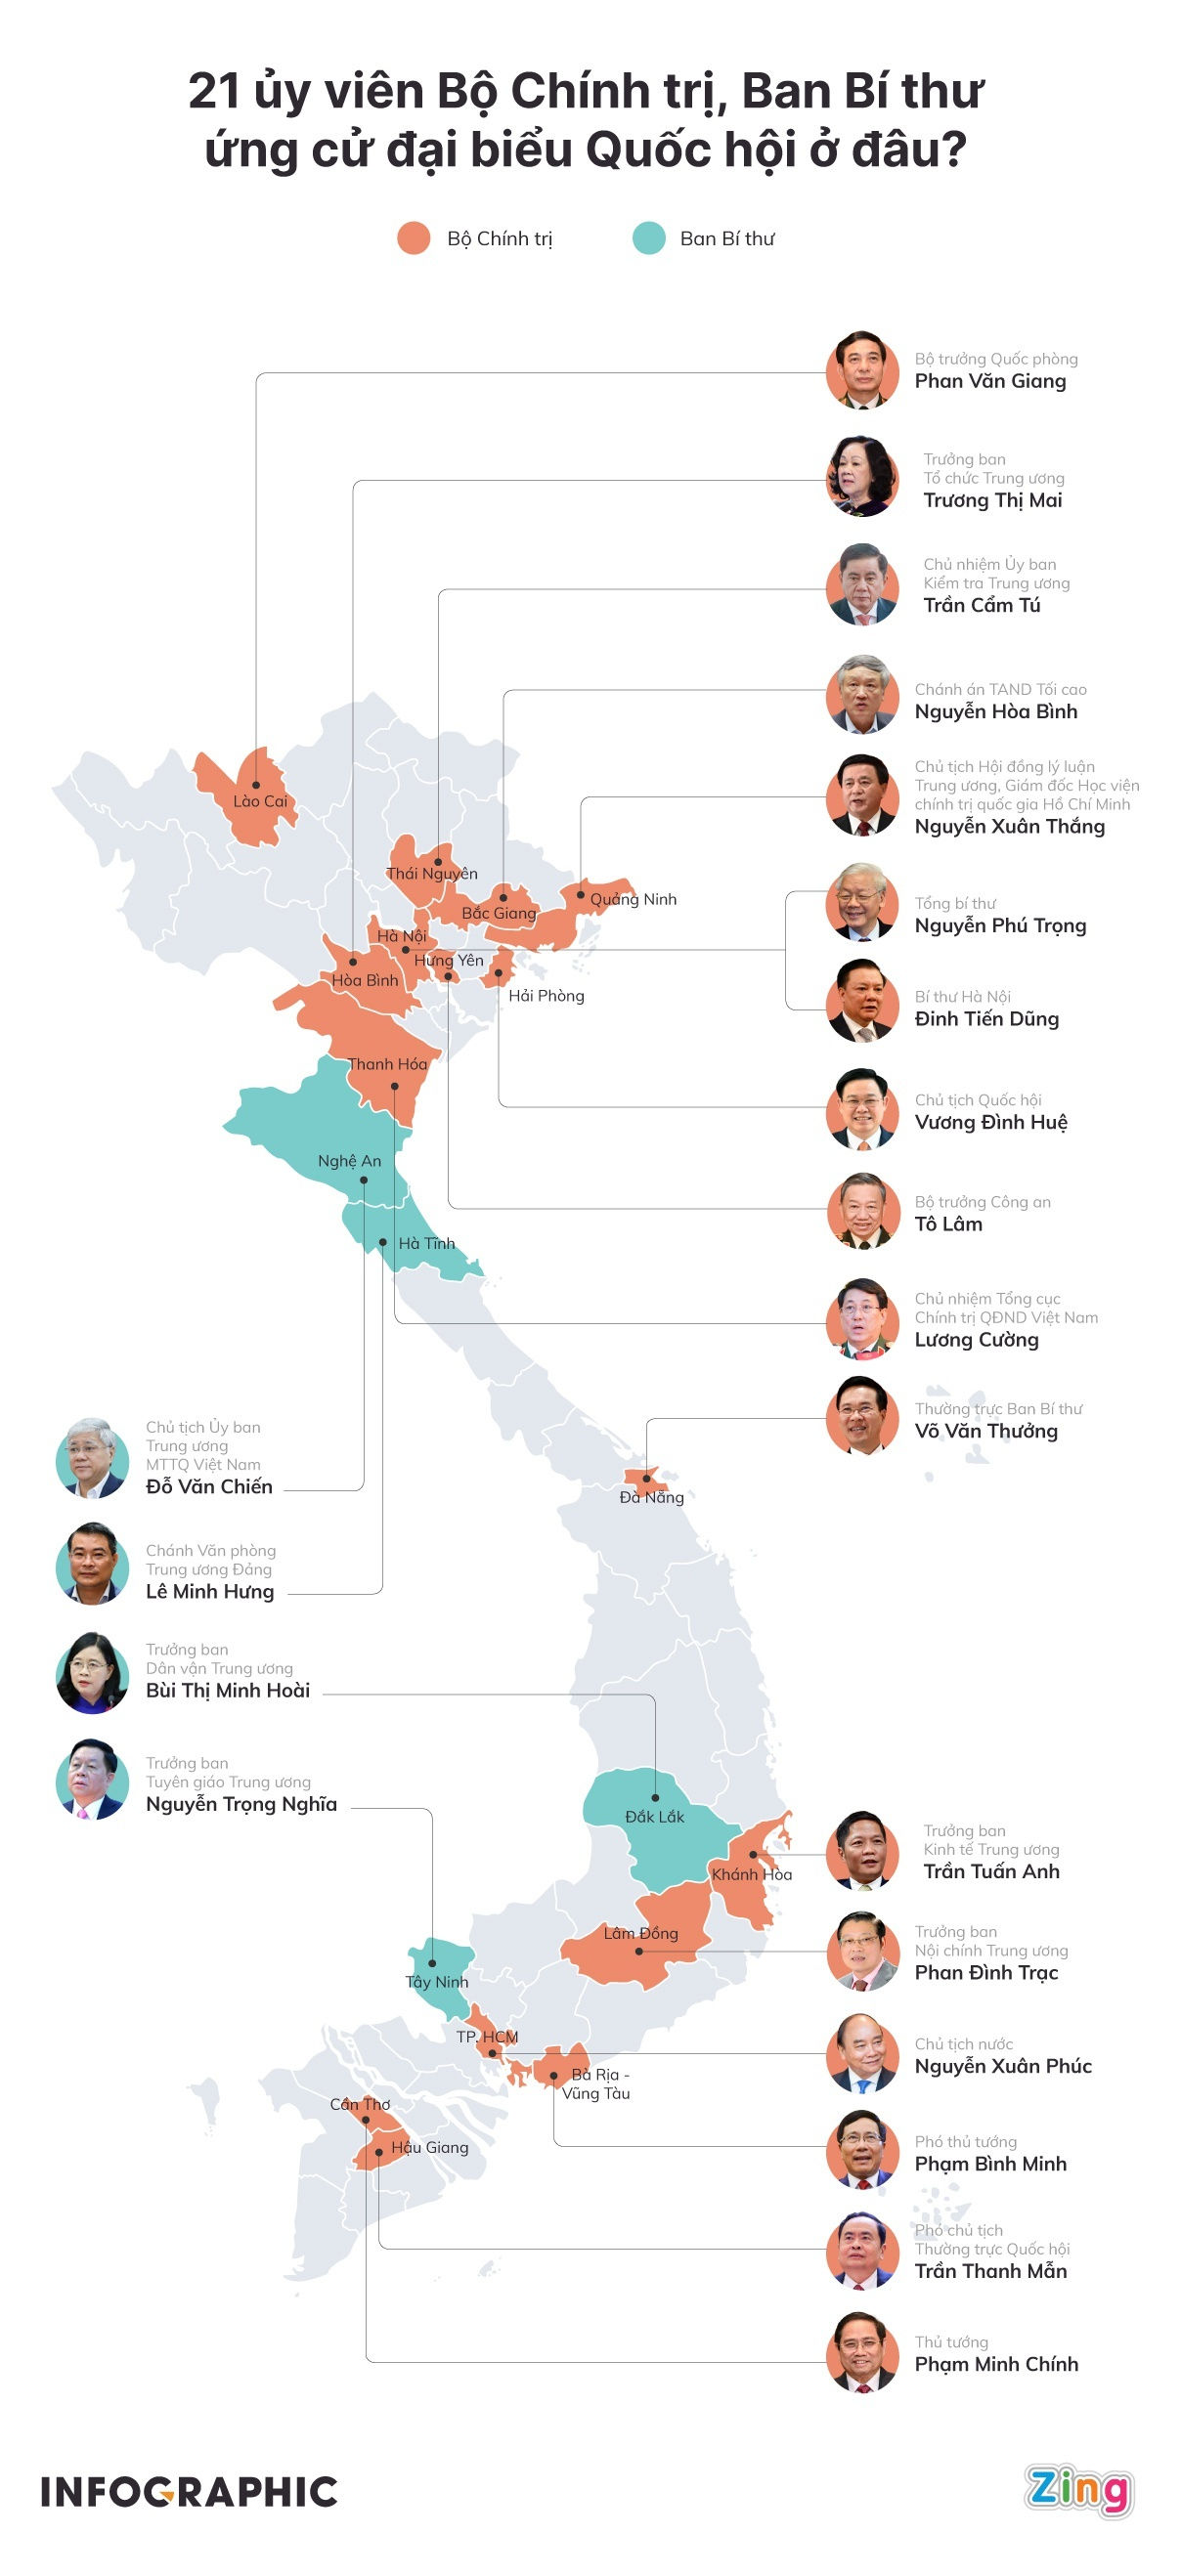 Infographic: 21 ủy viên Bộ Chính trị, Ban Bí thư ứng cử đại biểu Quốc hội ở đâu? - 1